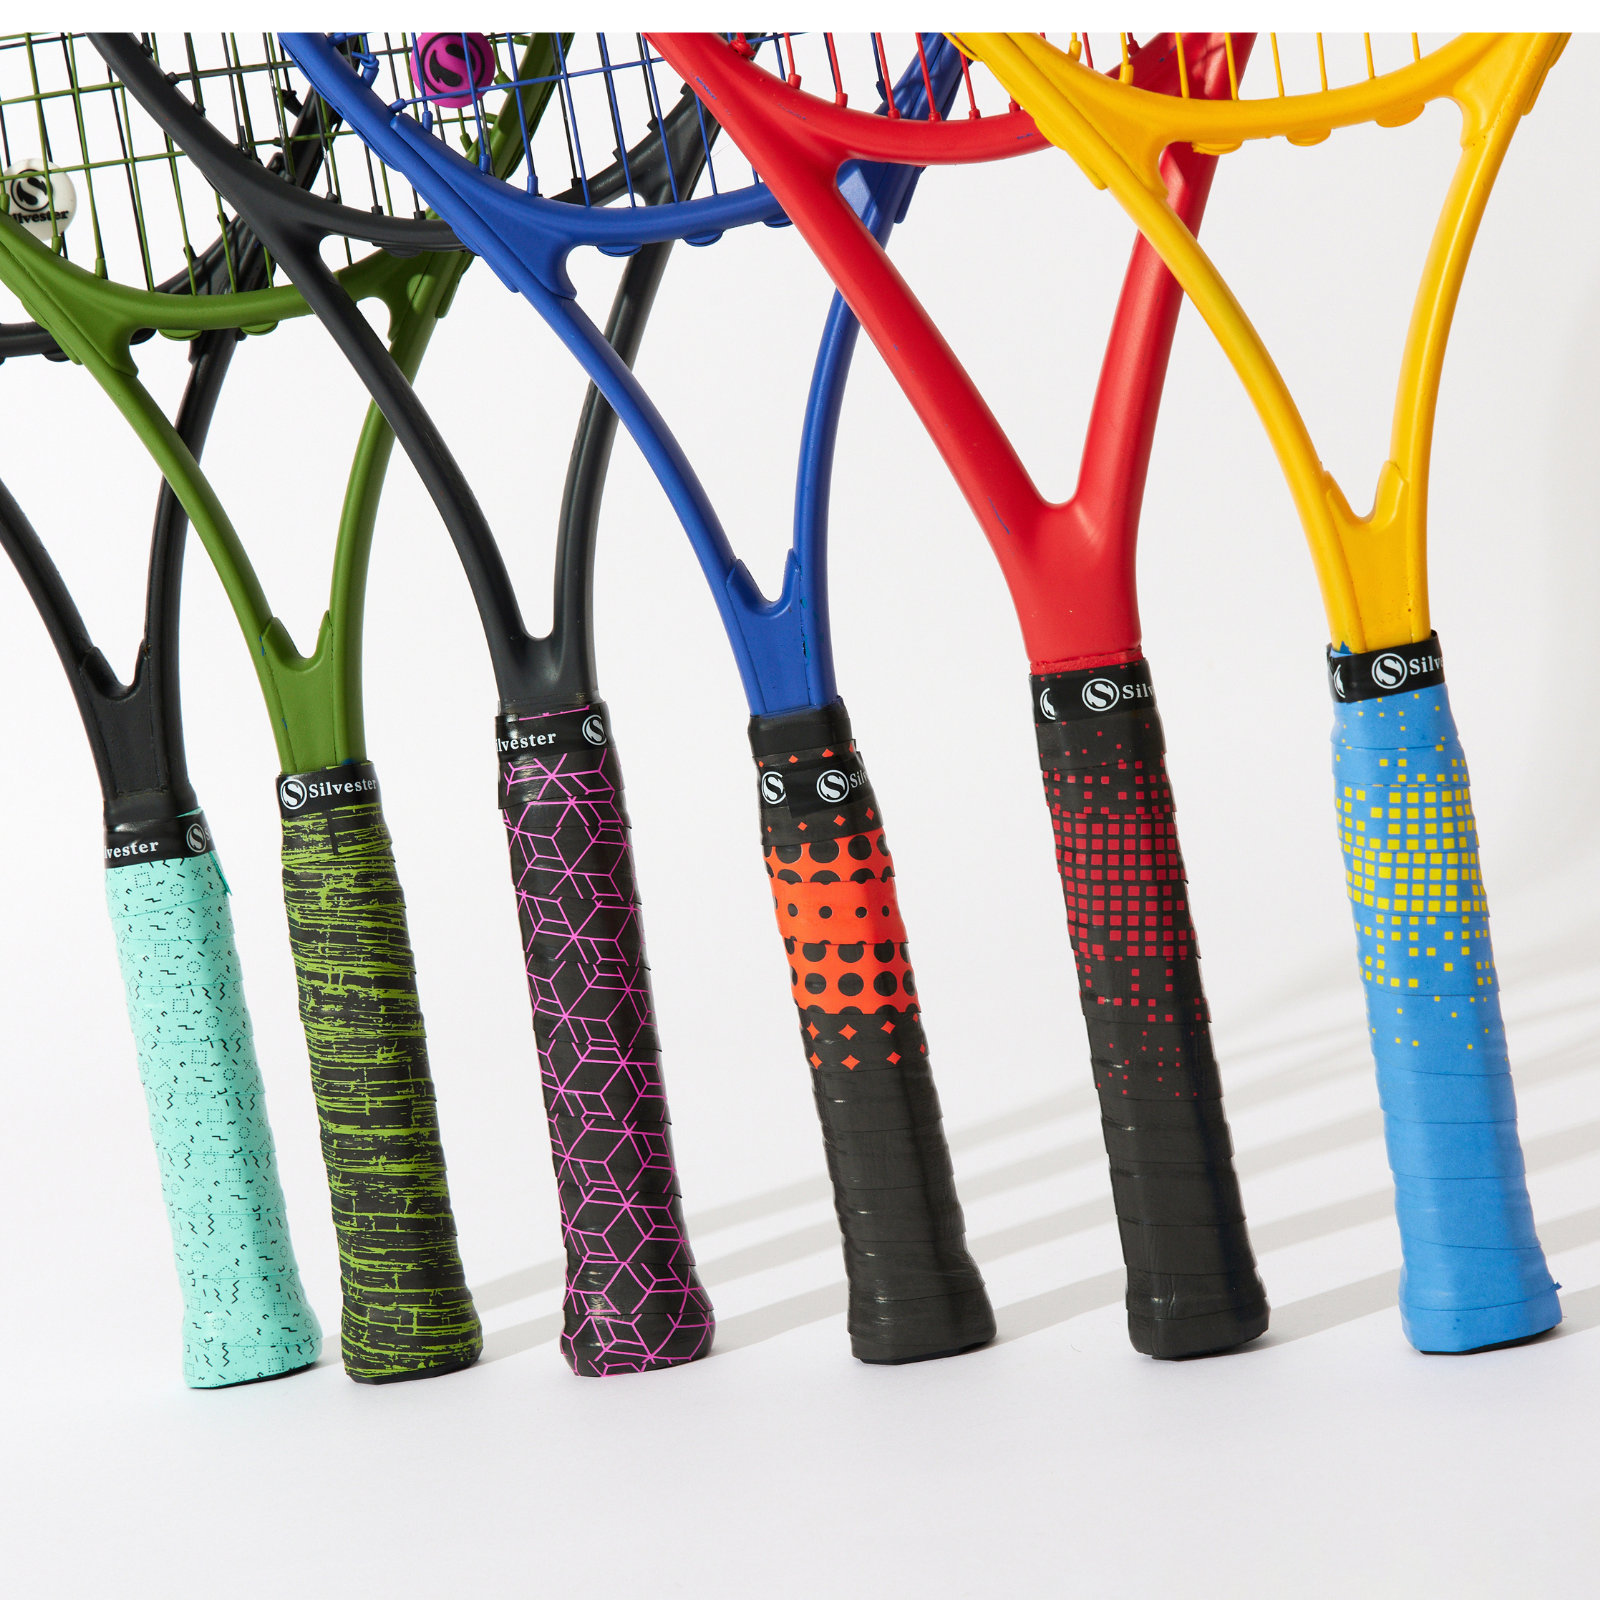 Surgrip Jaune Fluo - Padel/ Tennis/ Badminton/ squash - Grip tape